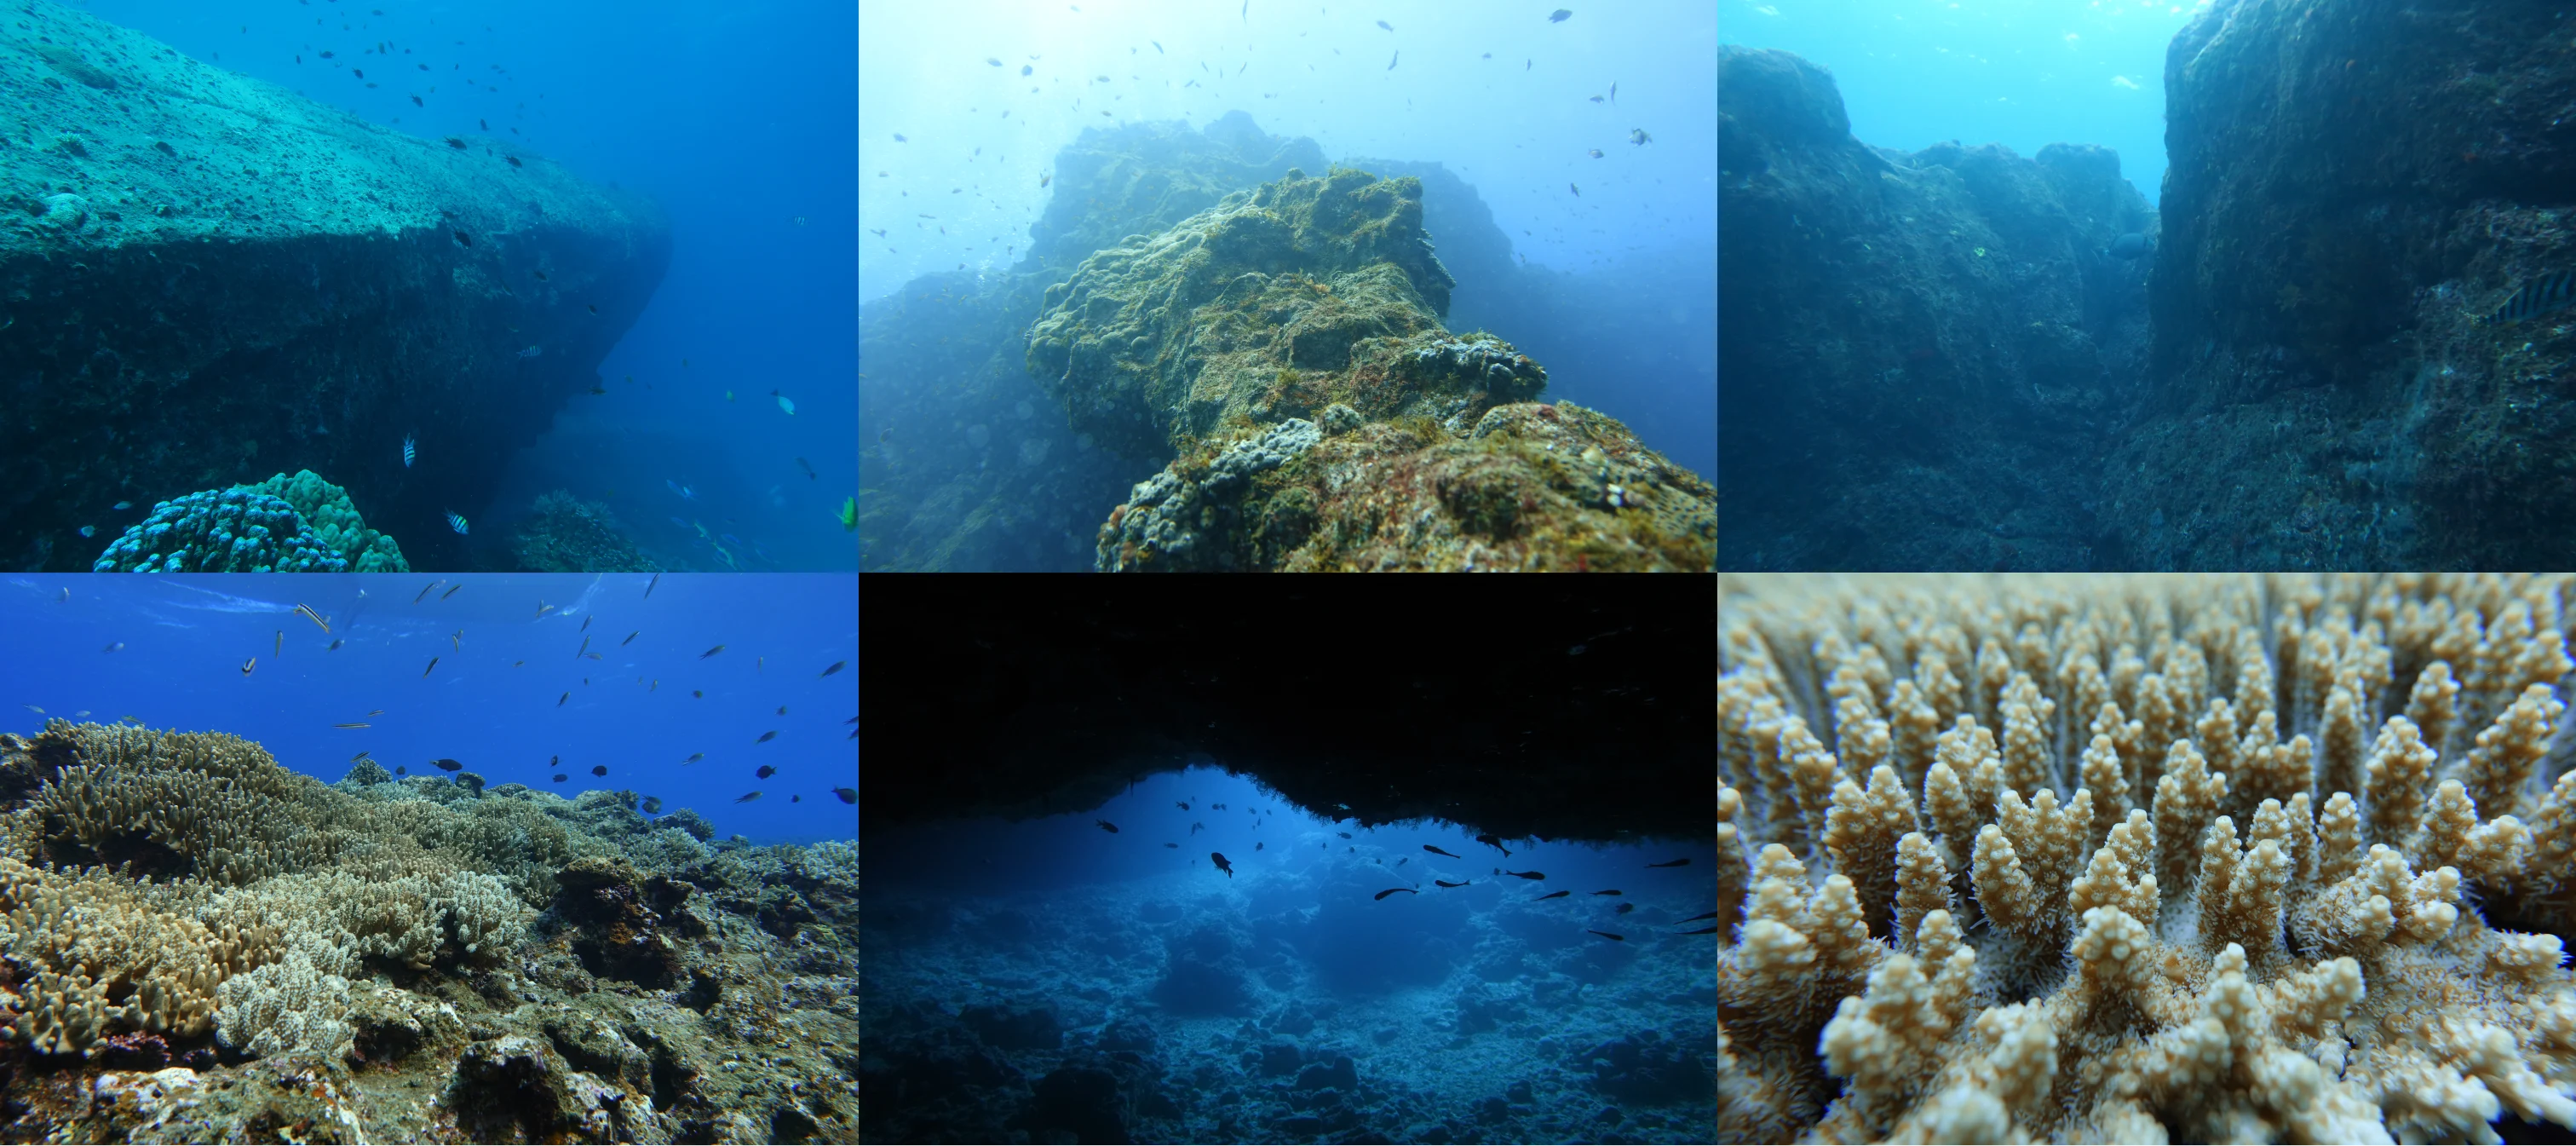 ６枚のダイナミックな岩礁が写った海中風景の画像